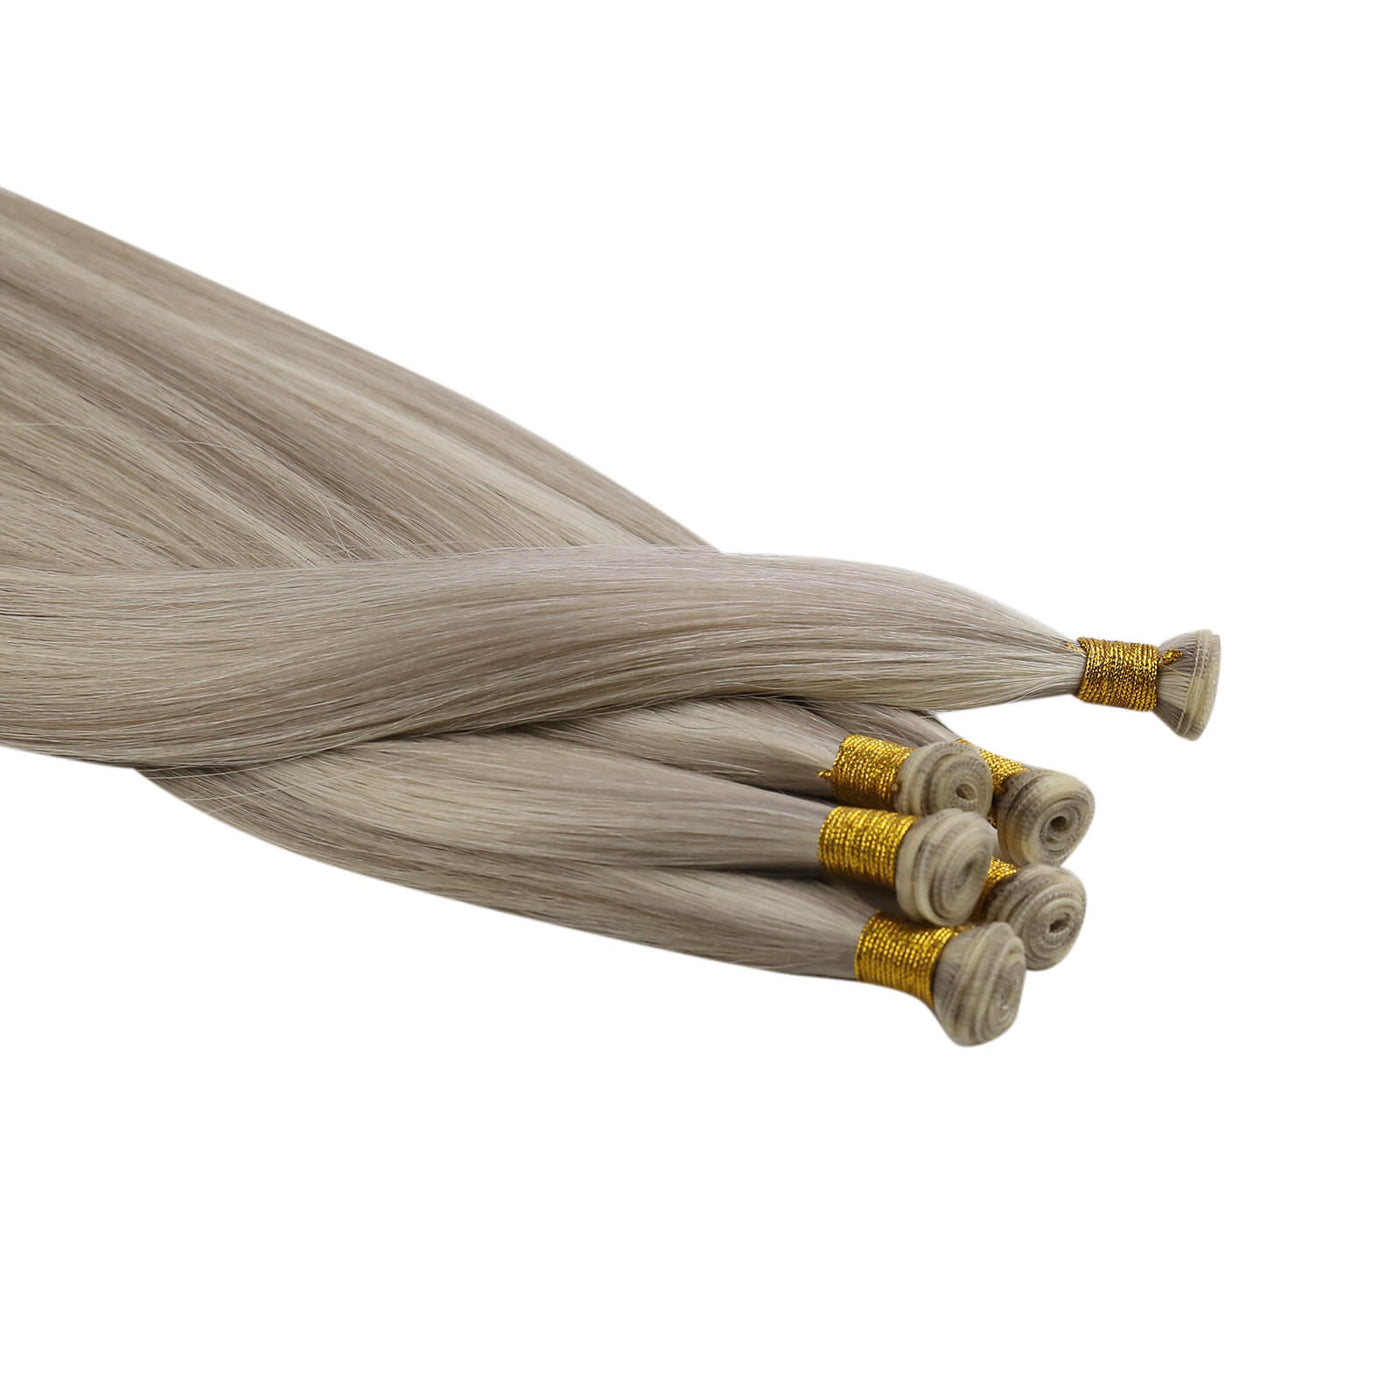 [virgin+]Vivien virgin+ Weft of Hair Weave Natural Hair Genius Weft Extensions Grey Highlight Blonde #P19/60